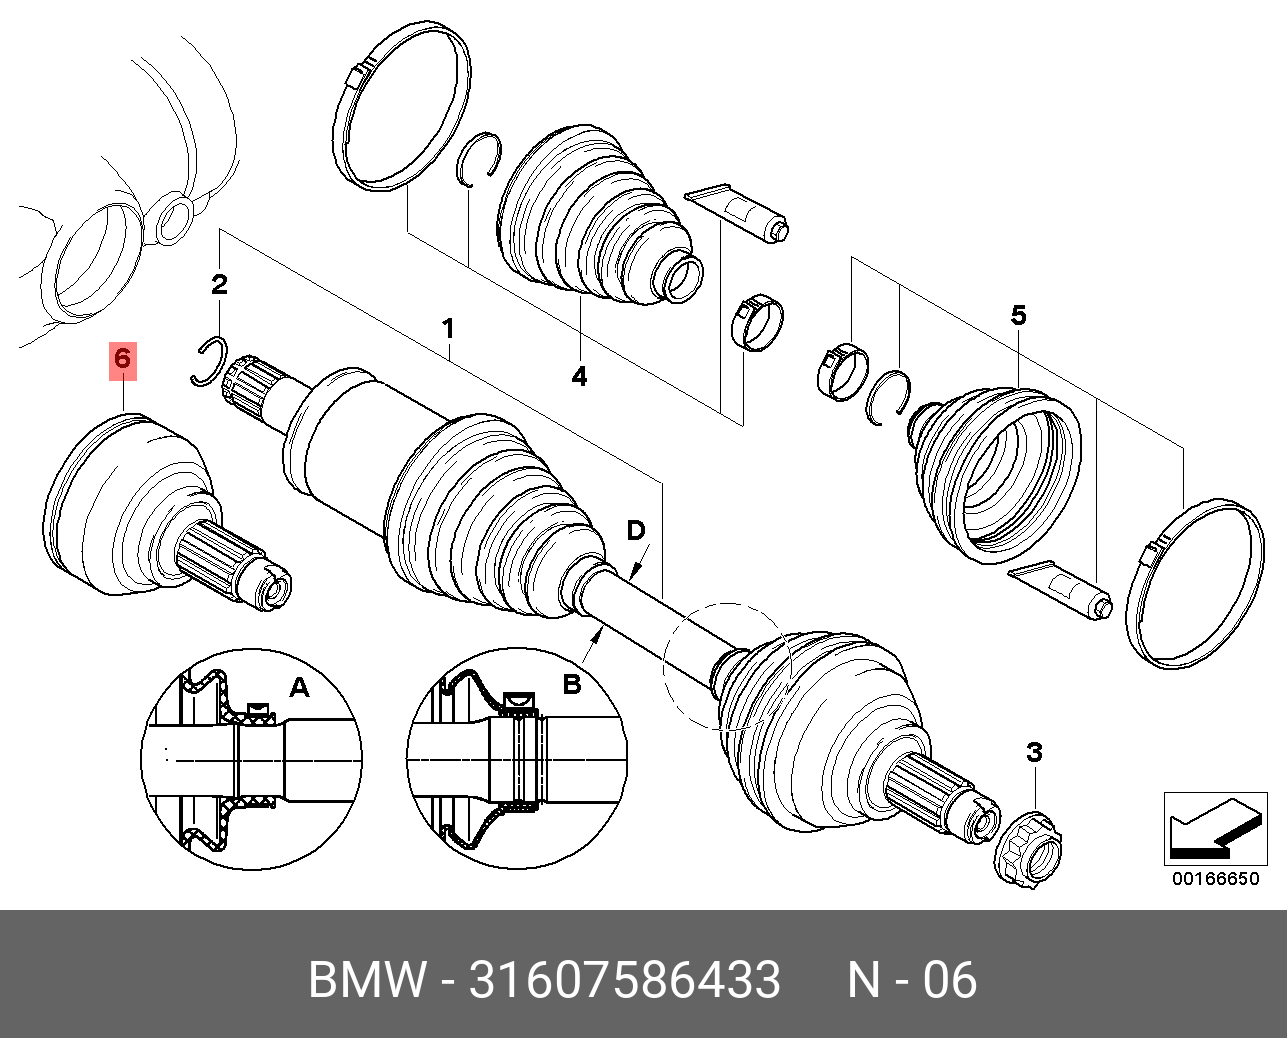 Bmw x5 привод. Привод передний БМВ х5 е70. BMW x5 e70 передний привод. Привод передний BMW x3 e83. Передний левый привод BMW x5 e53.